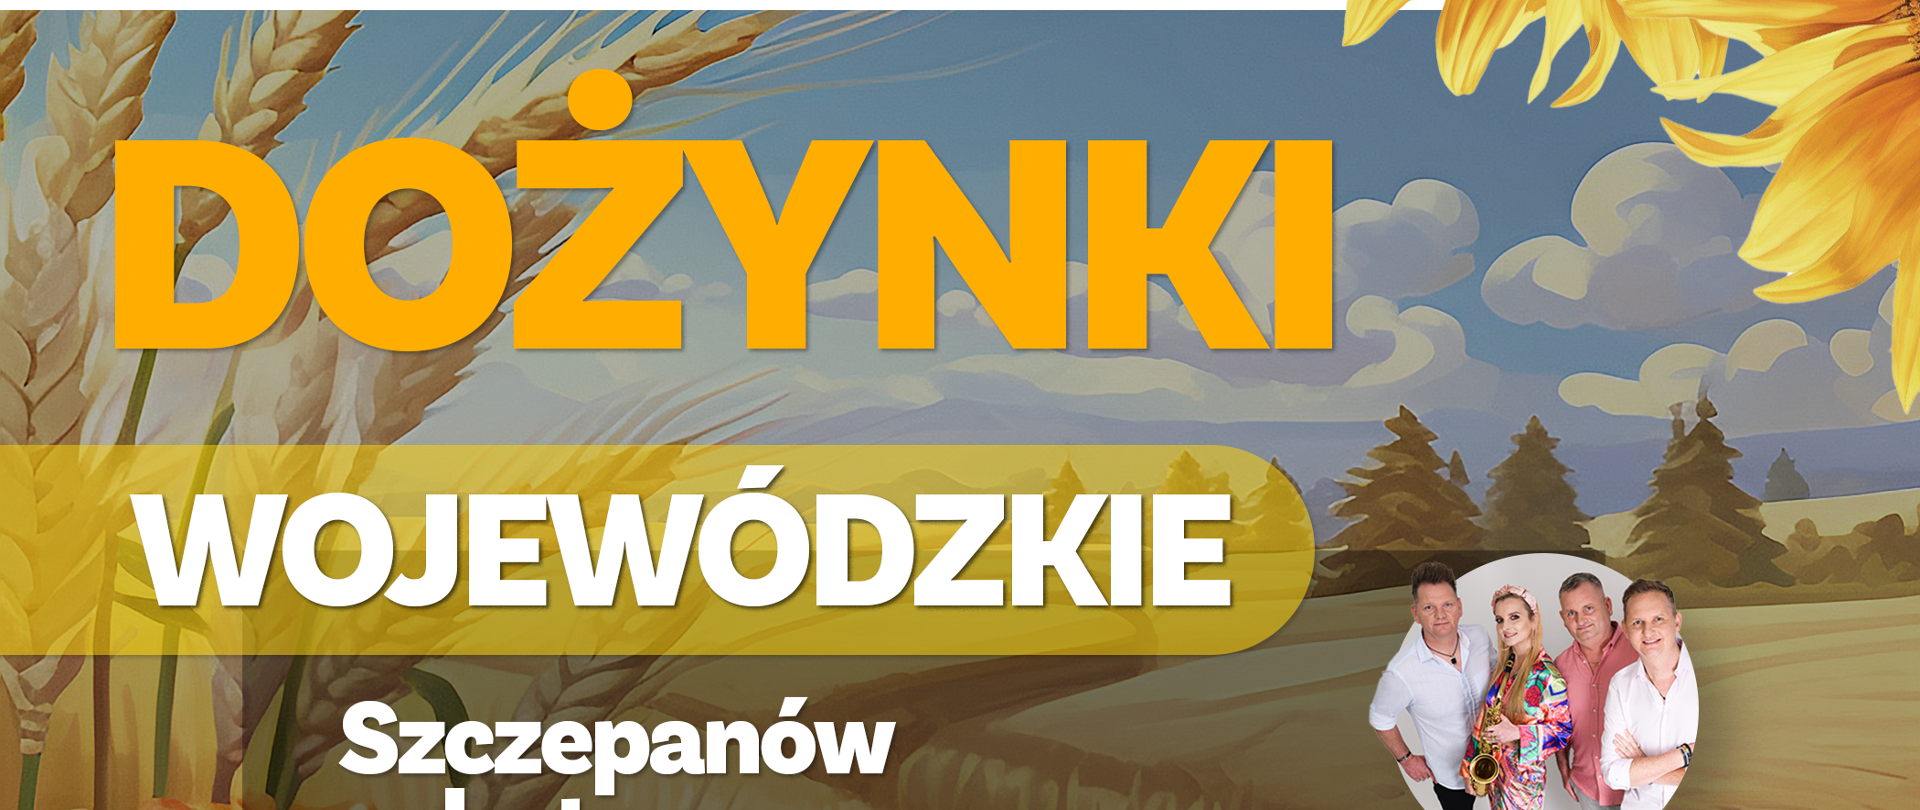 Plakat informujący o dożynkach województwa dolnośląskiego ze słonecznikami i zbożem w tle